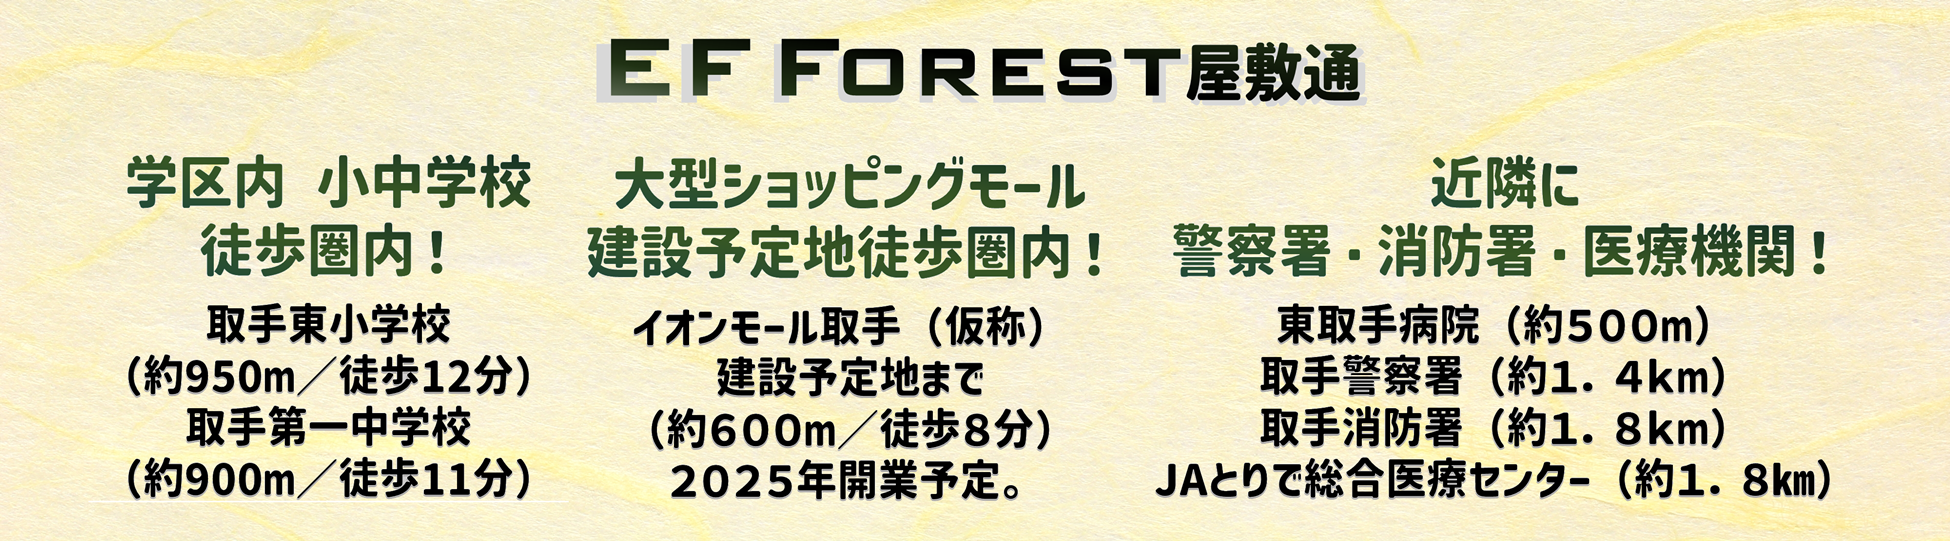 EF FOREST(エフフォレスト) 近隣施設